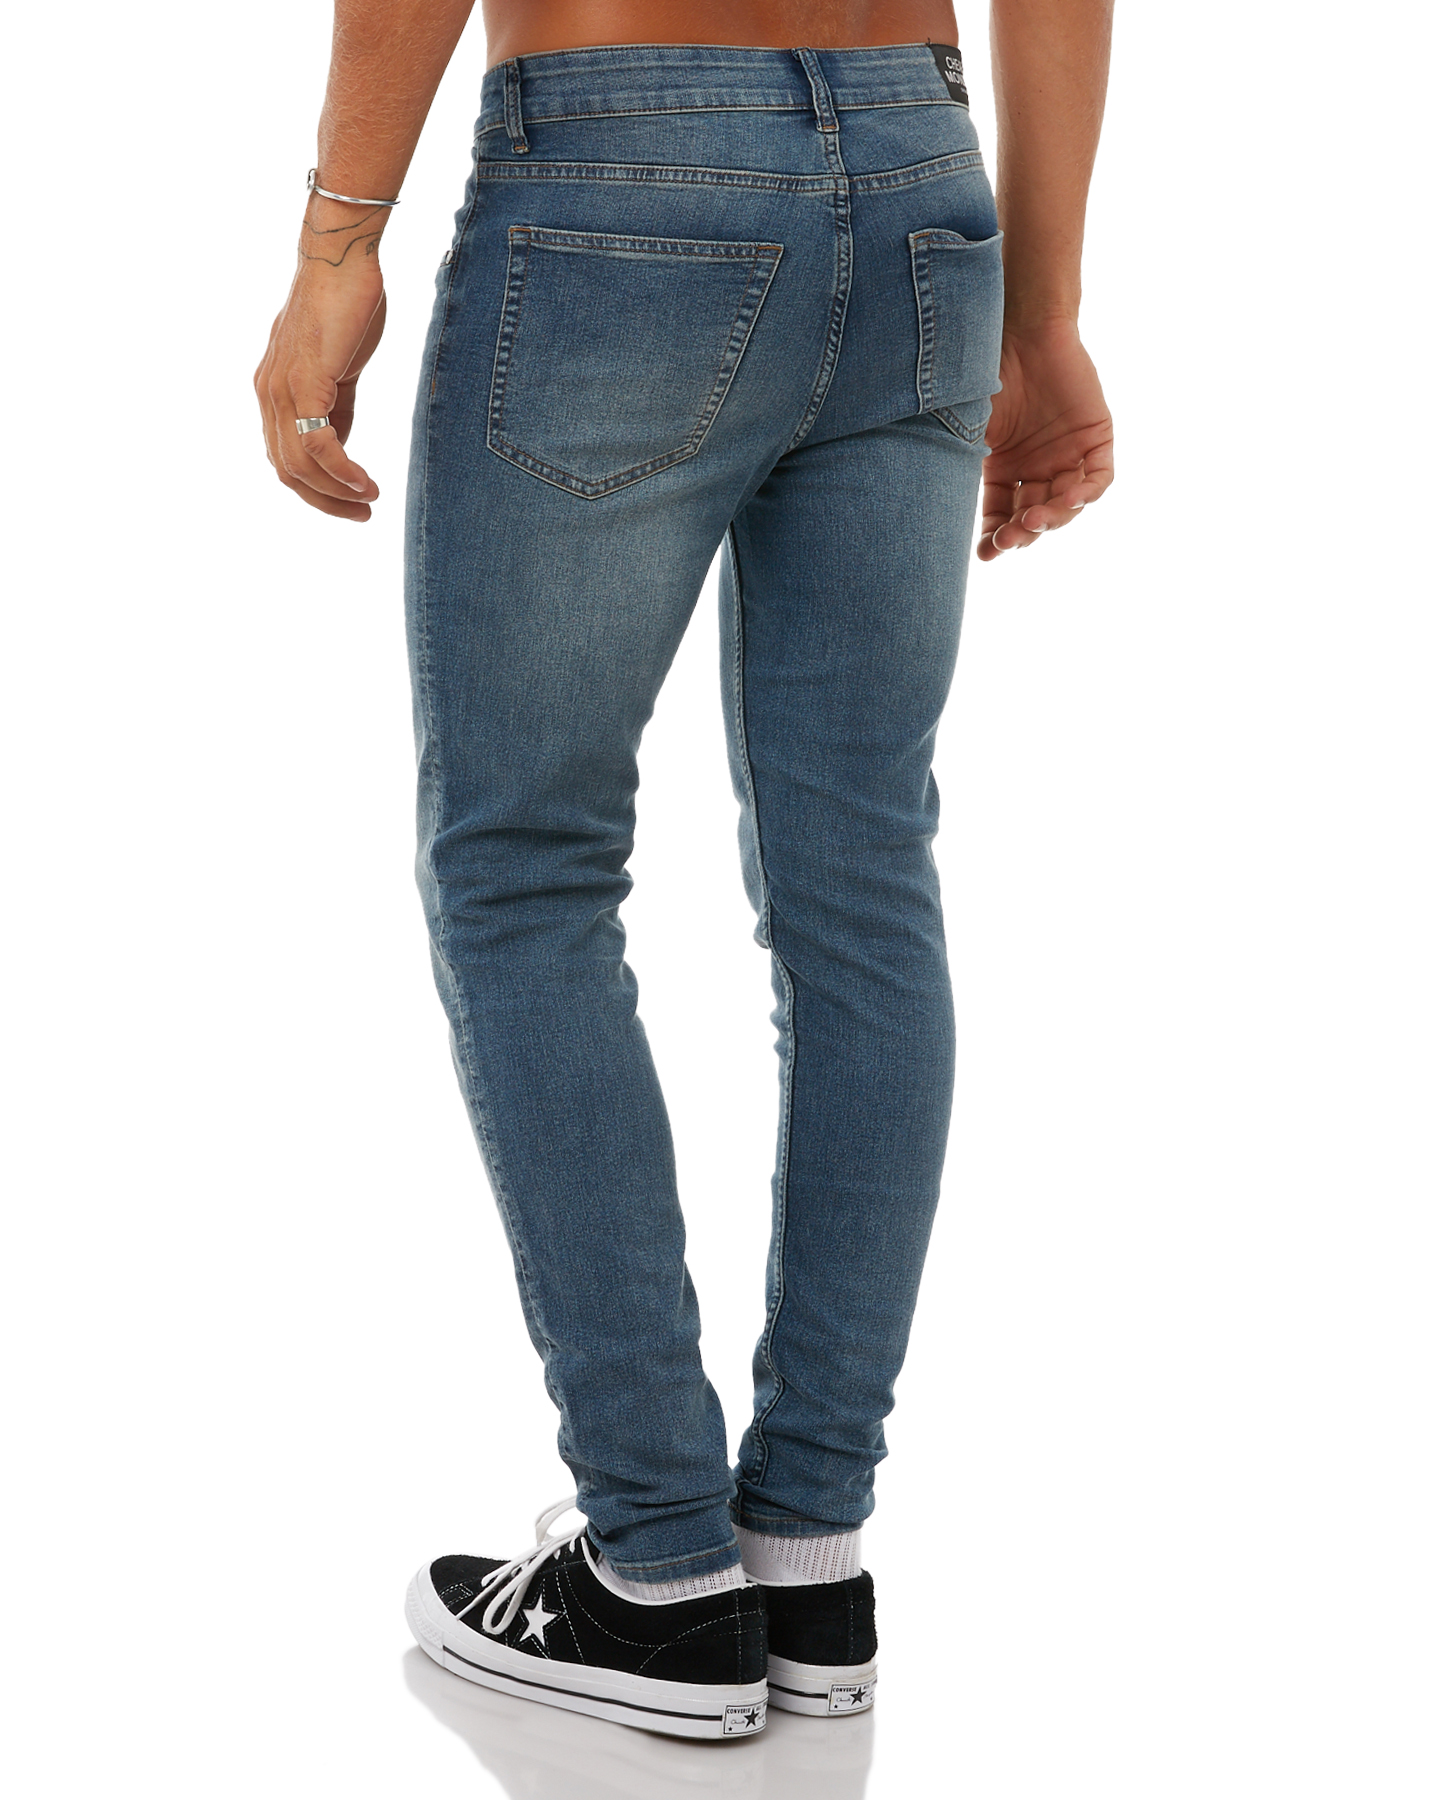 Grosir Distributor Celana Jeans Lois 04 Harga Murah Bagus Berkualitas